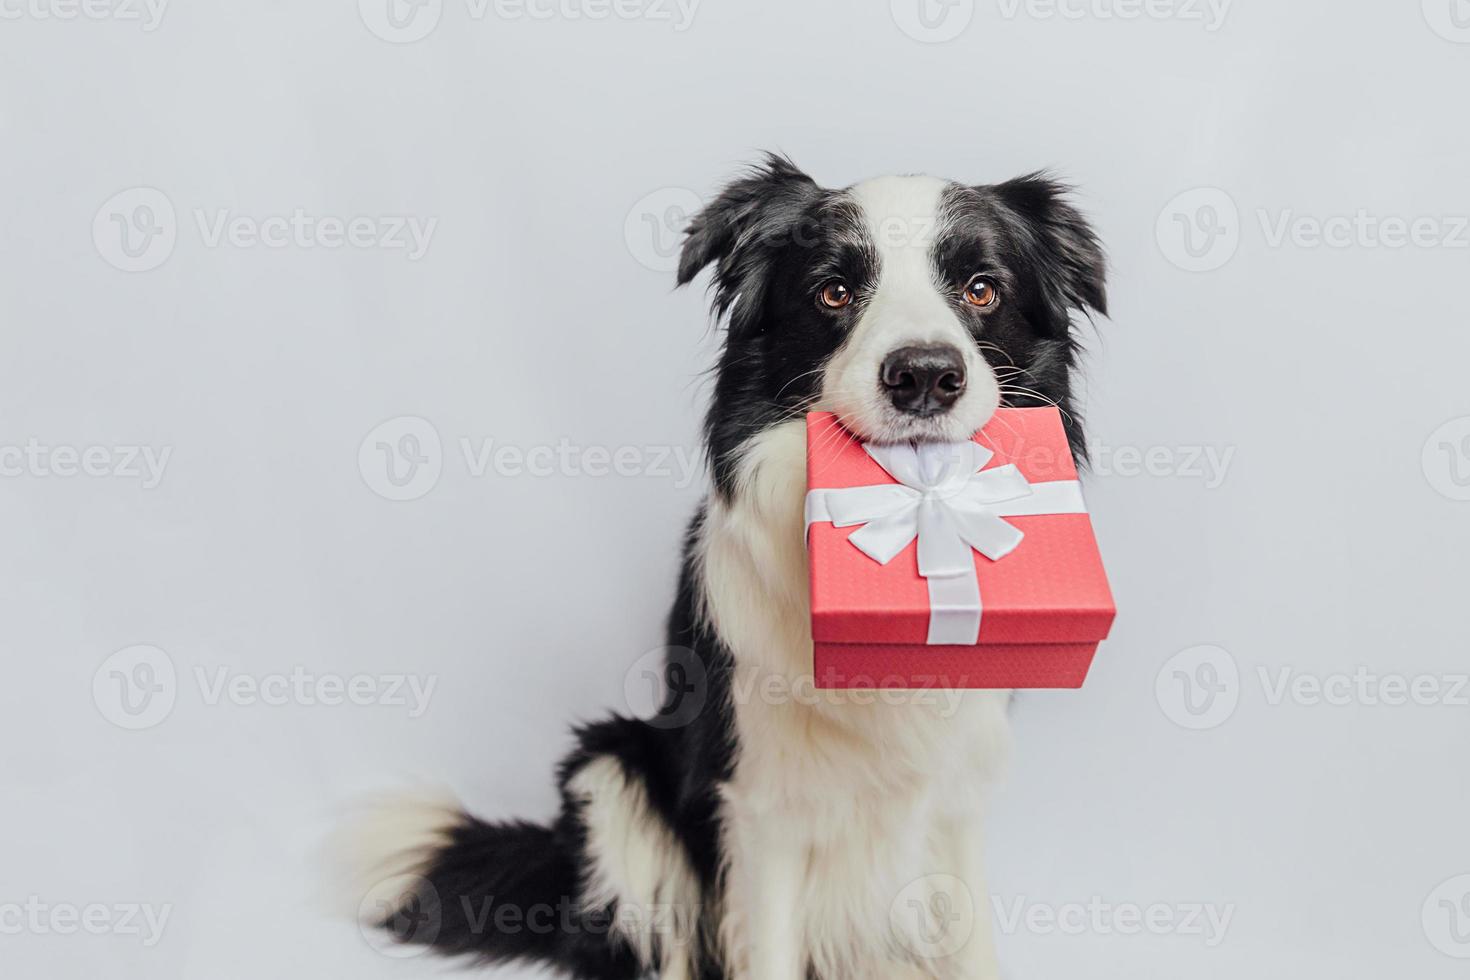 puppy hondje border collie rode geschenkdoos in de mond houden geïsoleerd op een witte achtergrond. kerstmis nieuwjaar verjaardag valentijn viering aanwezig concept. huisdier hond op vakantie dag geeft cadeau. het spijt me. foto